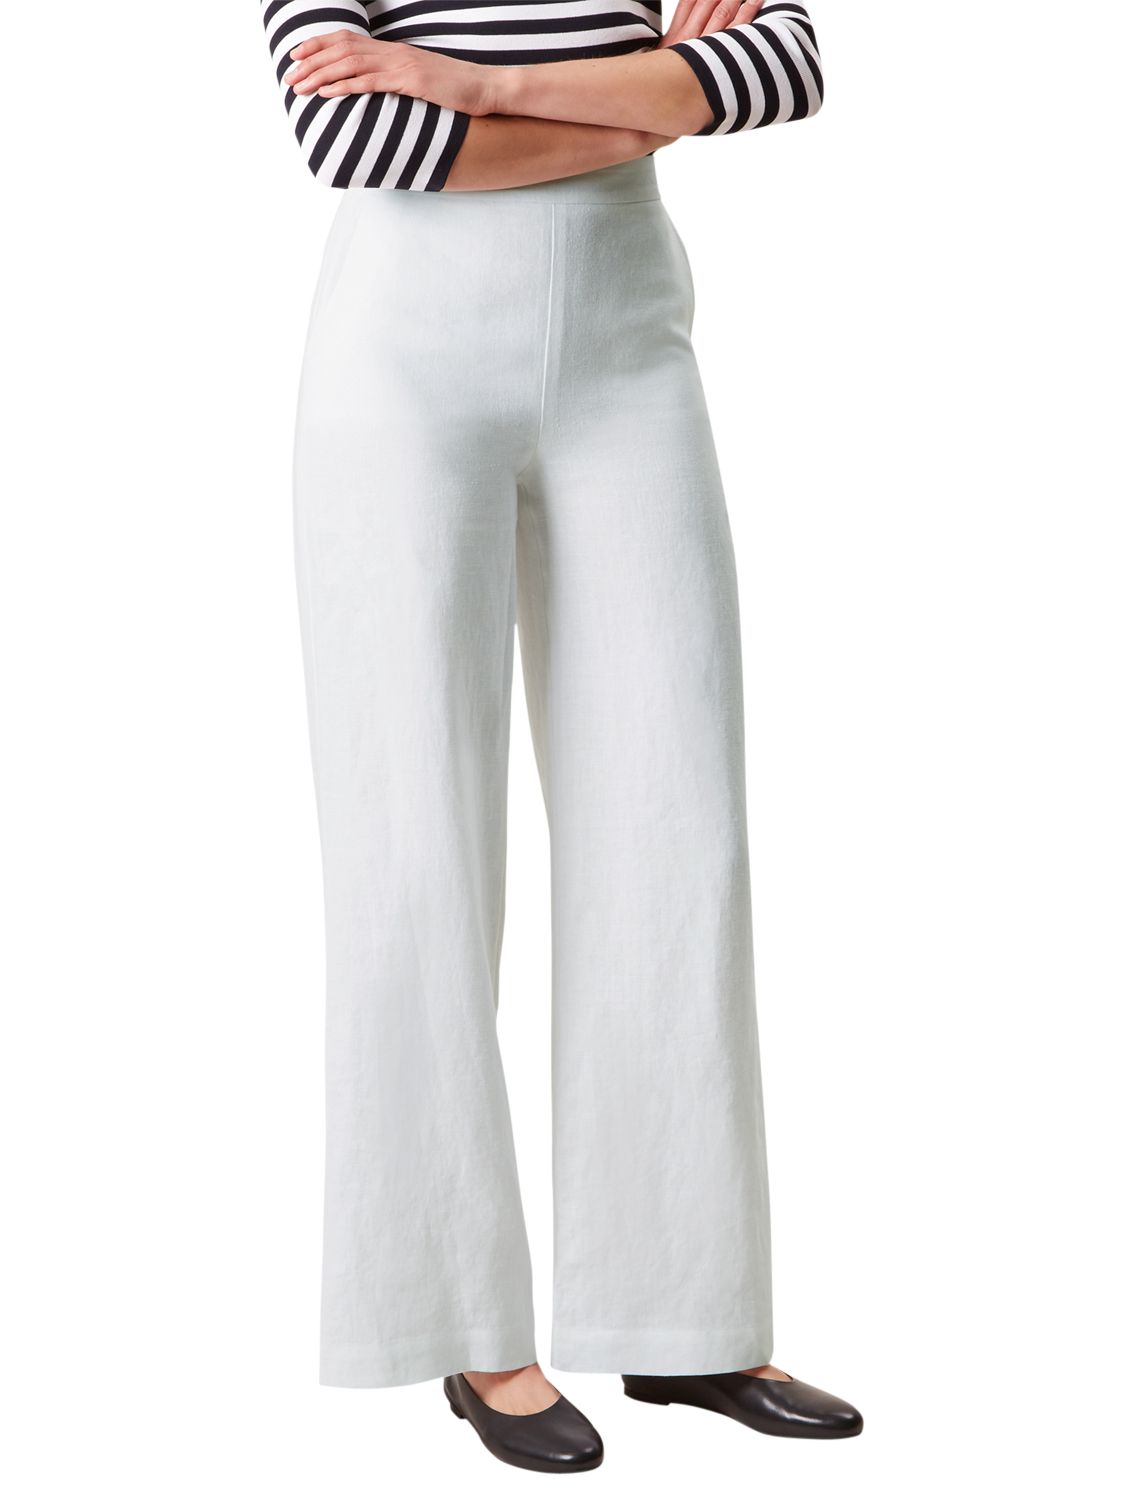 Hobbs Anise Linen Trousers, White, 10